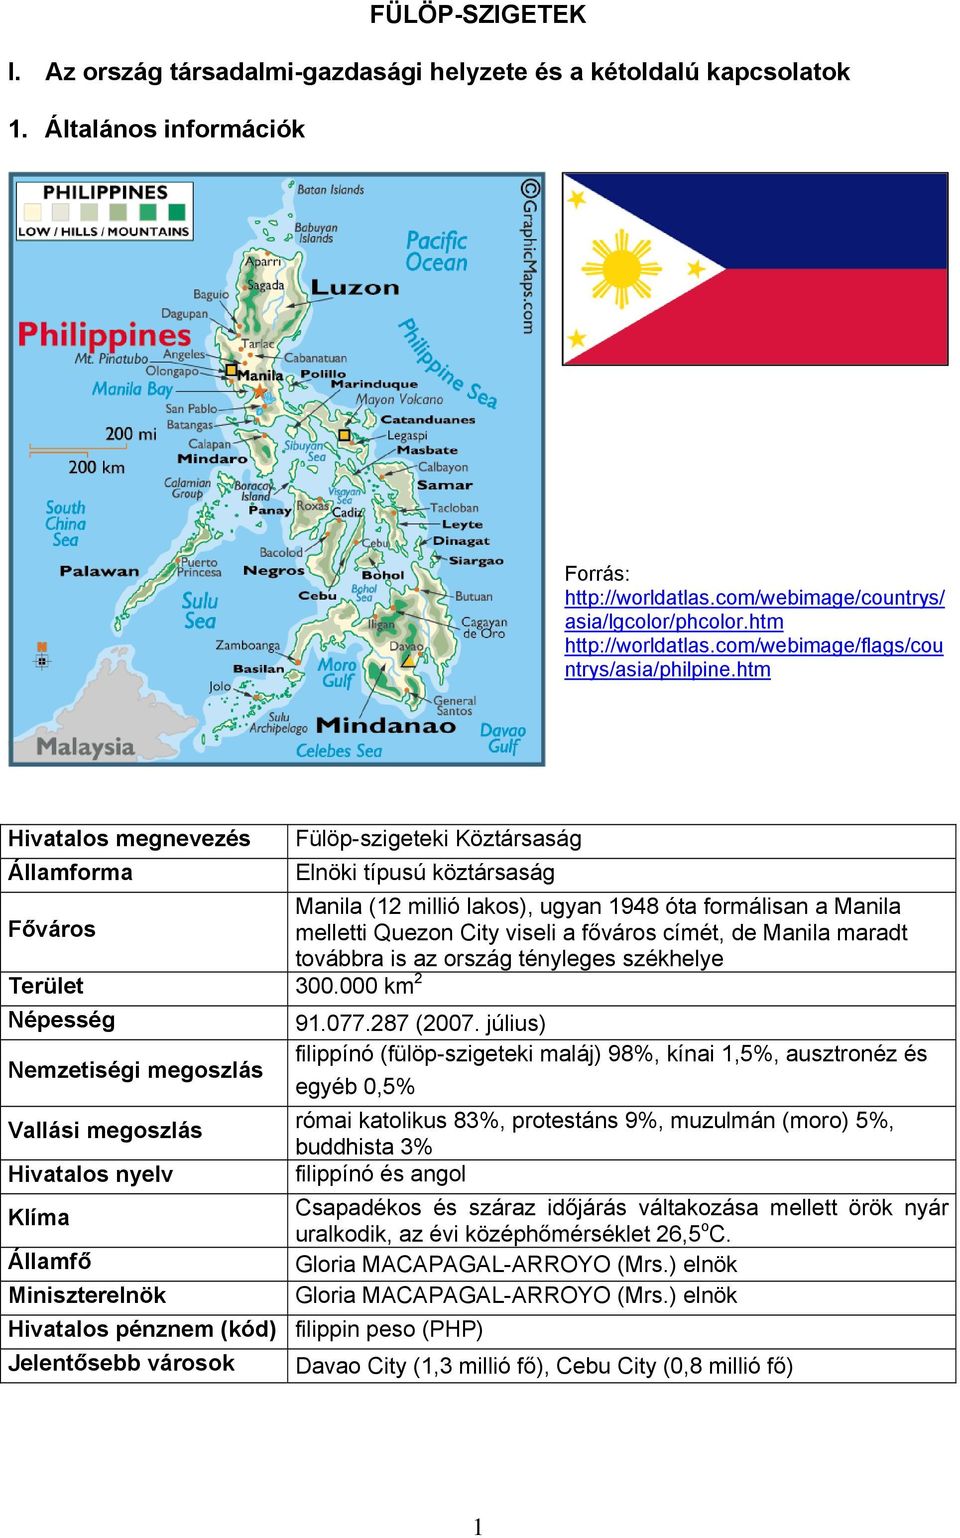 htm Hivatalos megnevezés Államforma Fülöp-szigeteki Köztársaság Elnöki típusú köztársaság Manila (12 millió lakos), ugyan 1948 óta formálisan a Manila Főváros melletti Quezon City viseli a főváros